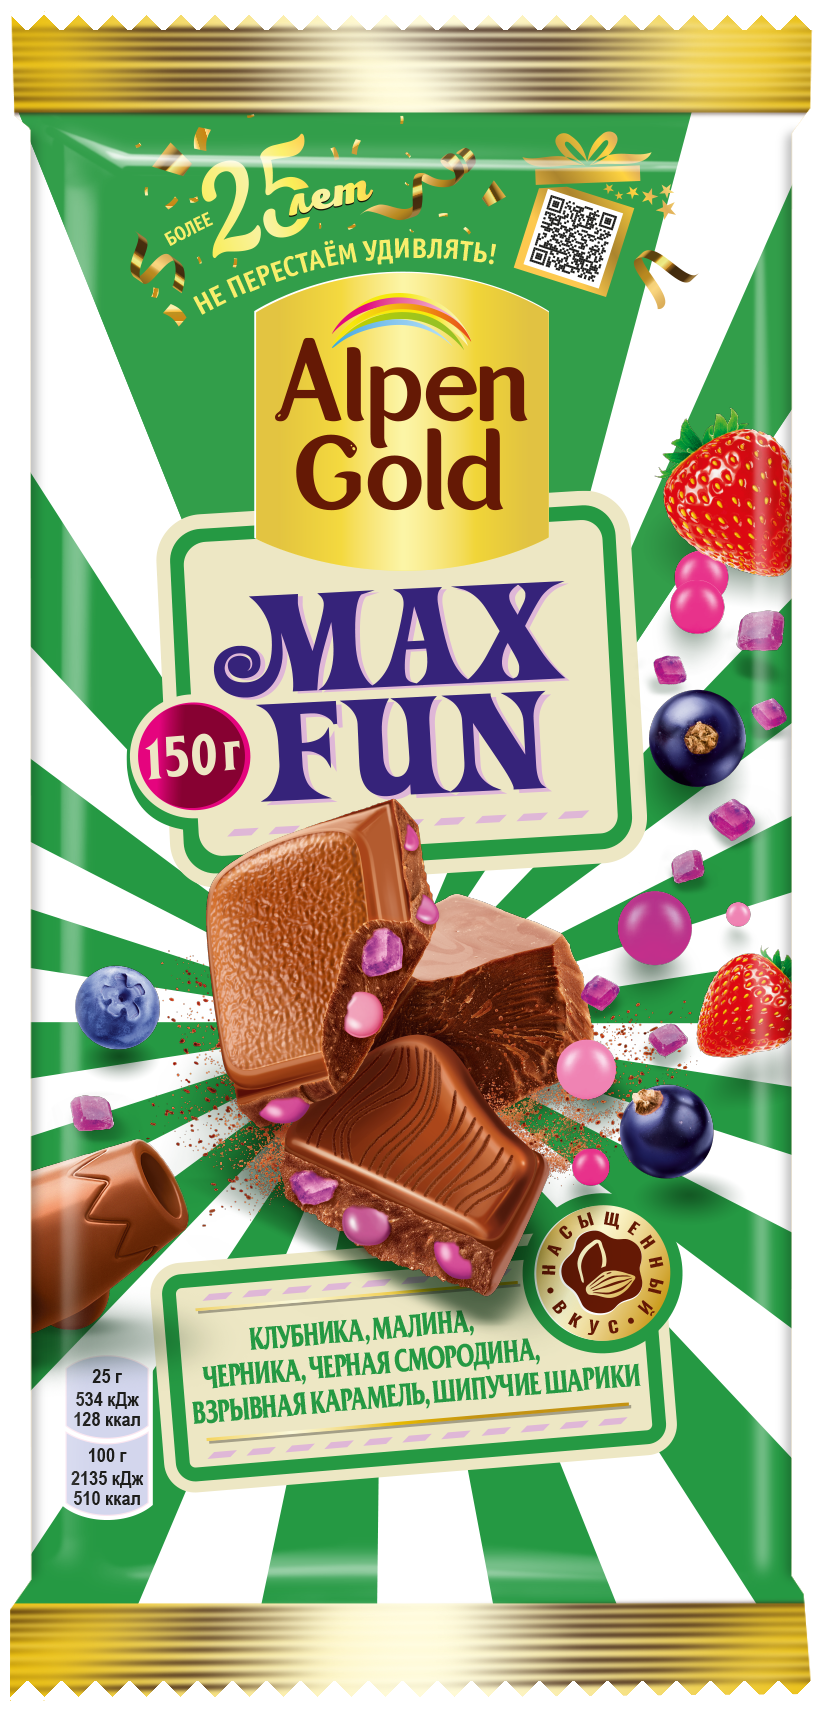 Шоколад Alpen Gold Max Fun молочный клубника, малина, черника, черная смородина, взрывная карамель, шипучие шарики, 150 г - фотография № 1